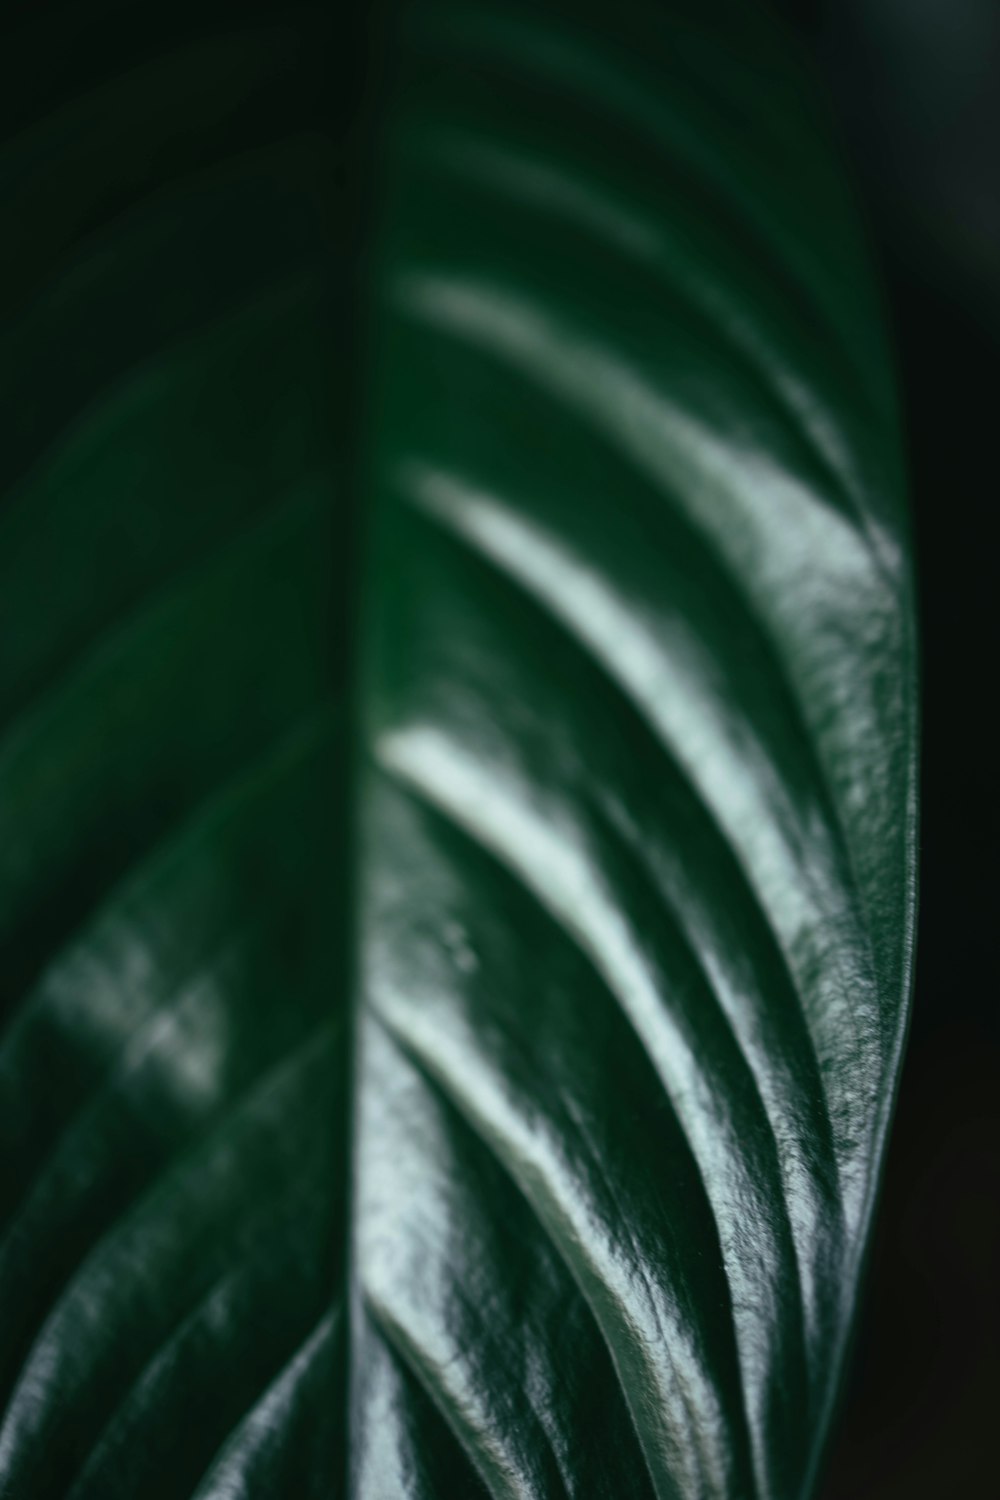 folha verde na fotografia de perto